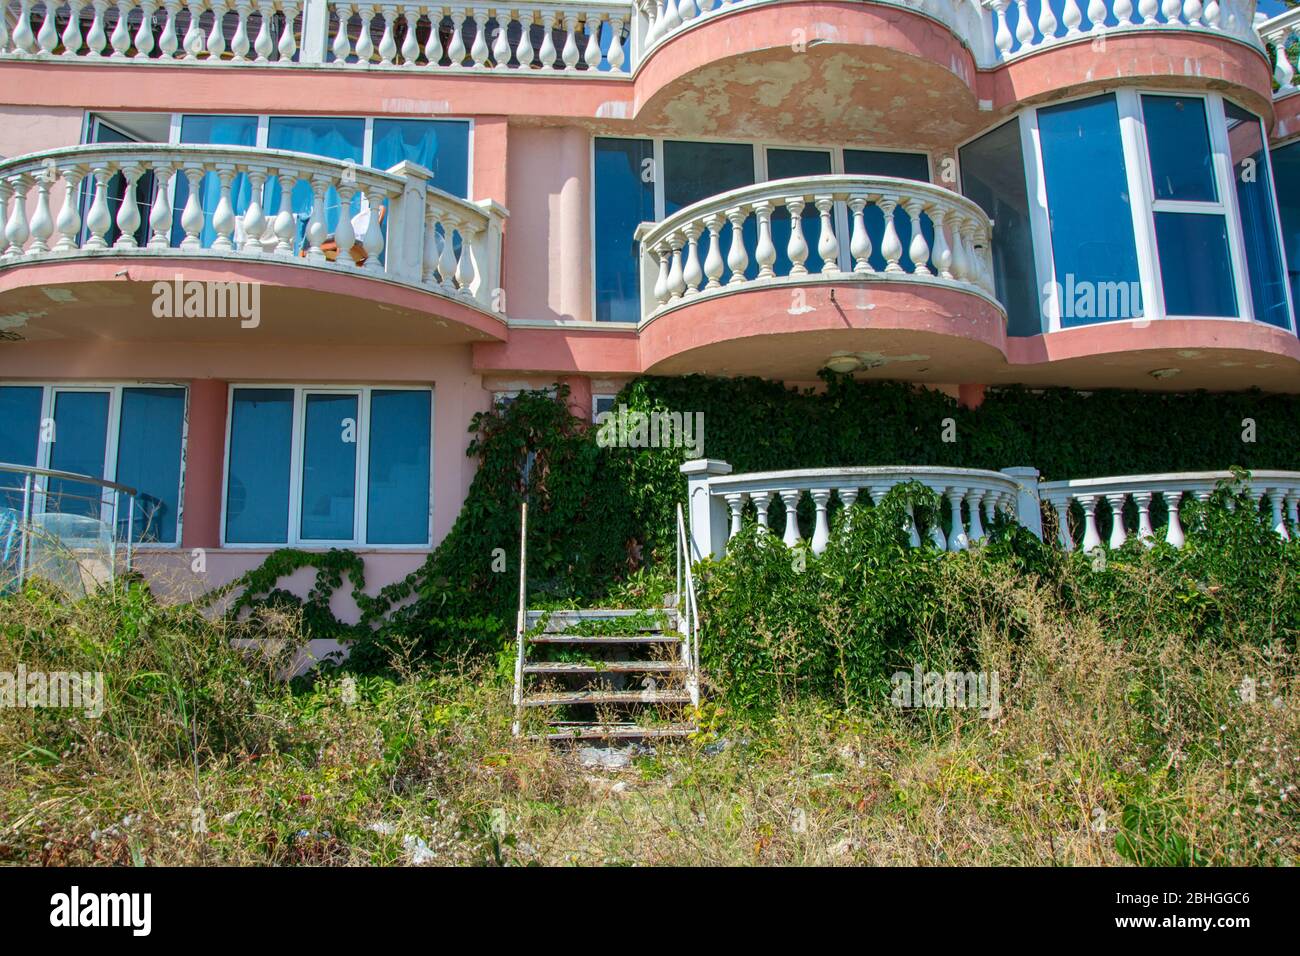 Verlassene Hotel am Strand, mit grünem Gras und kletternden Efeu Pflanze bedeckt, die Natur übernehmen Konzept, Gebäude Fassade Stockfoto